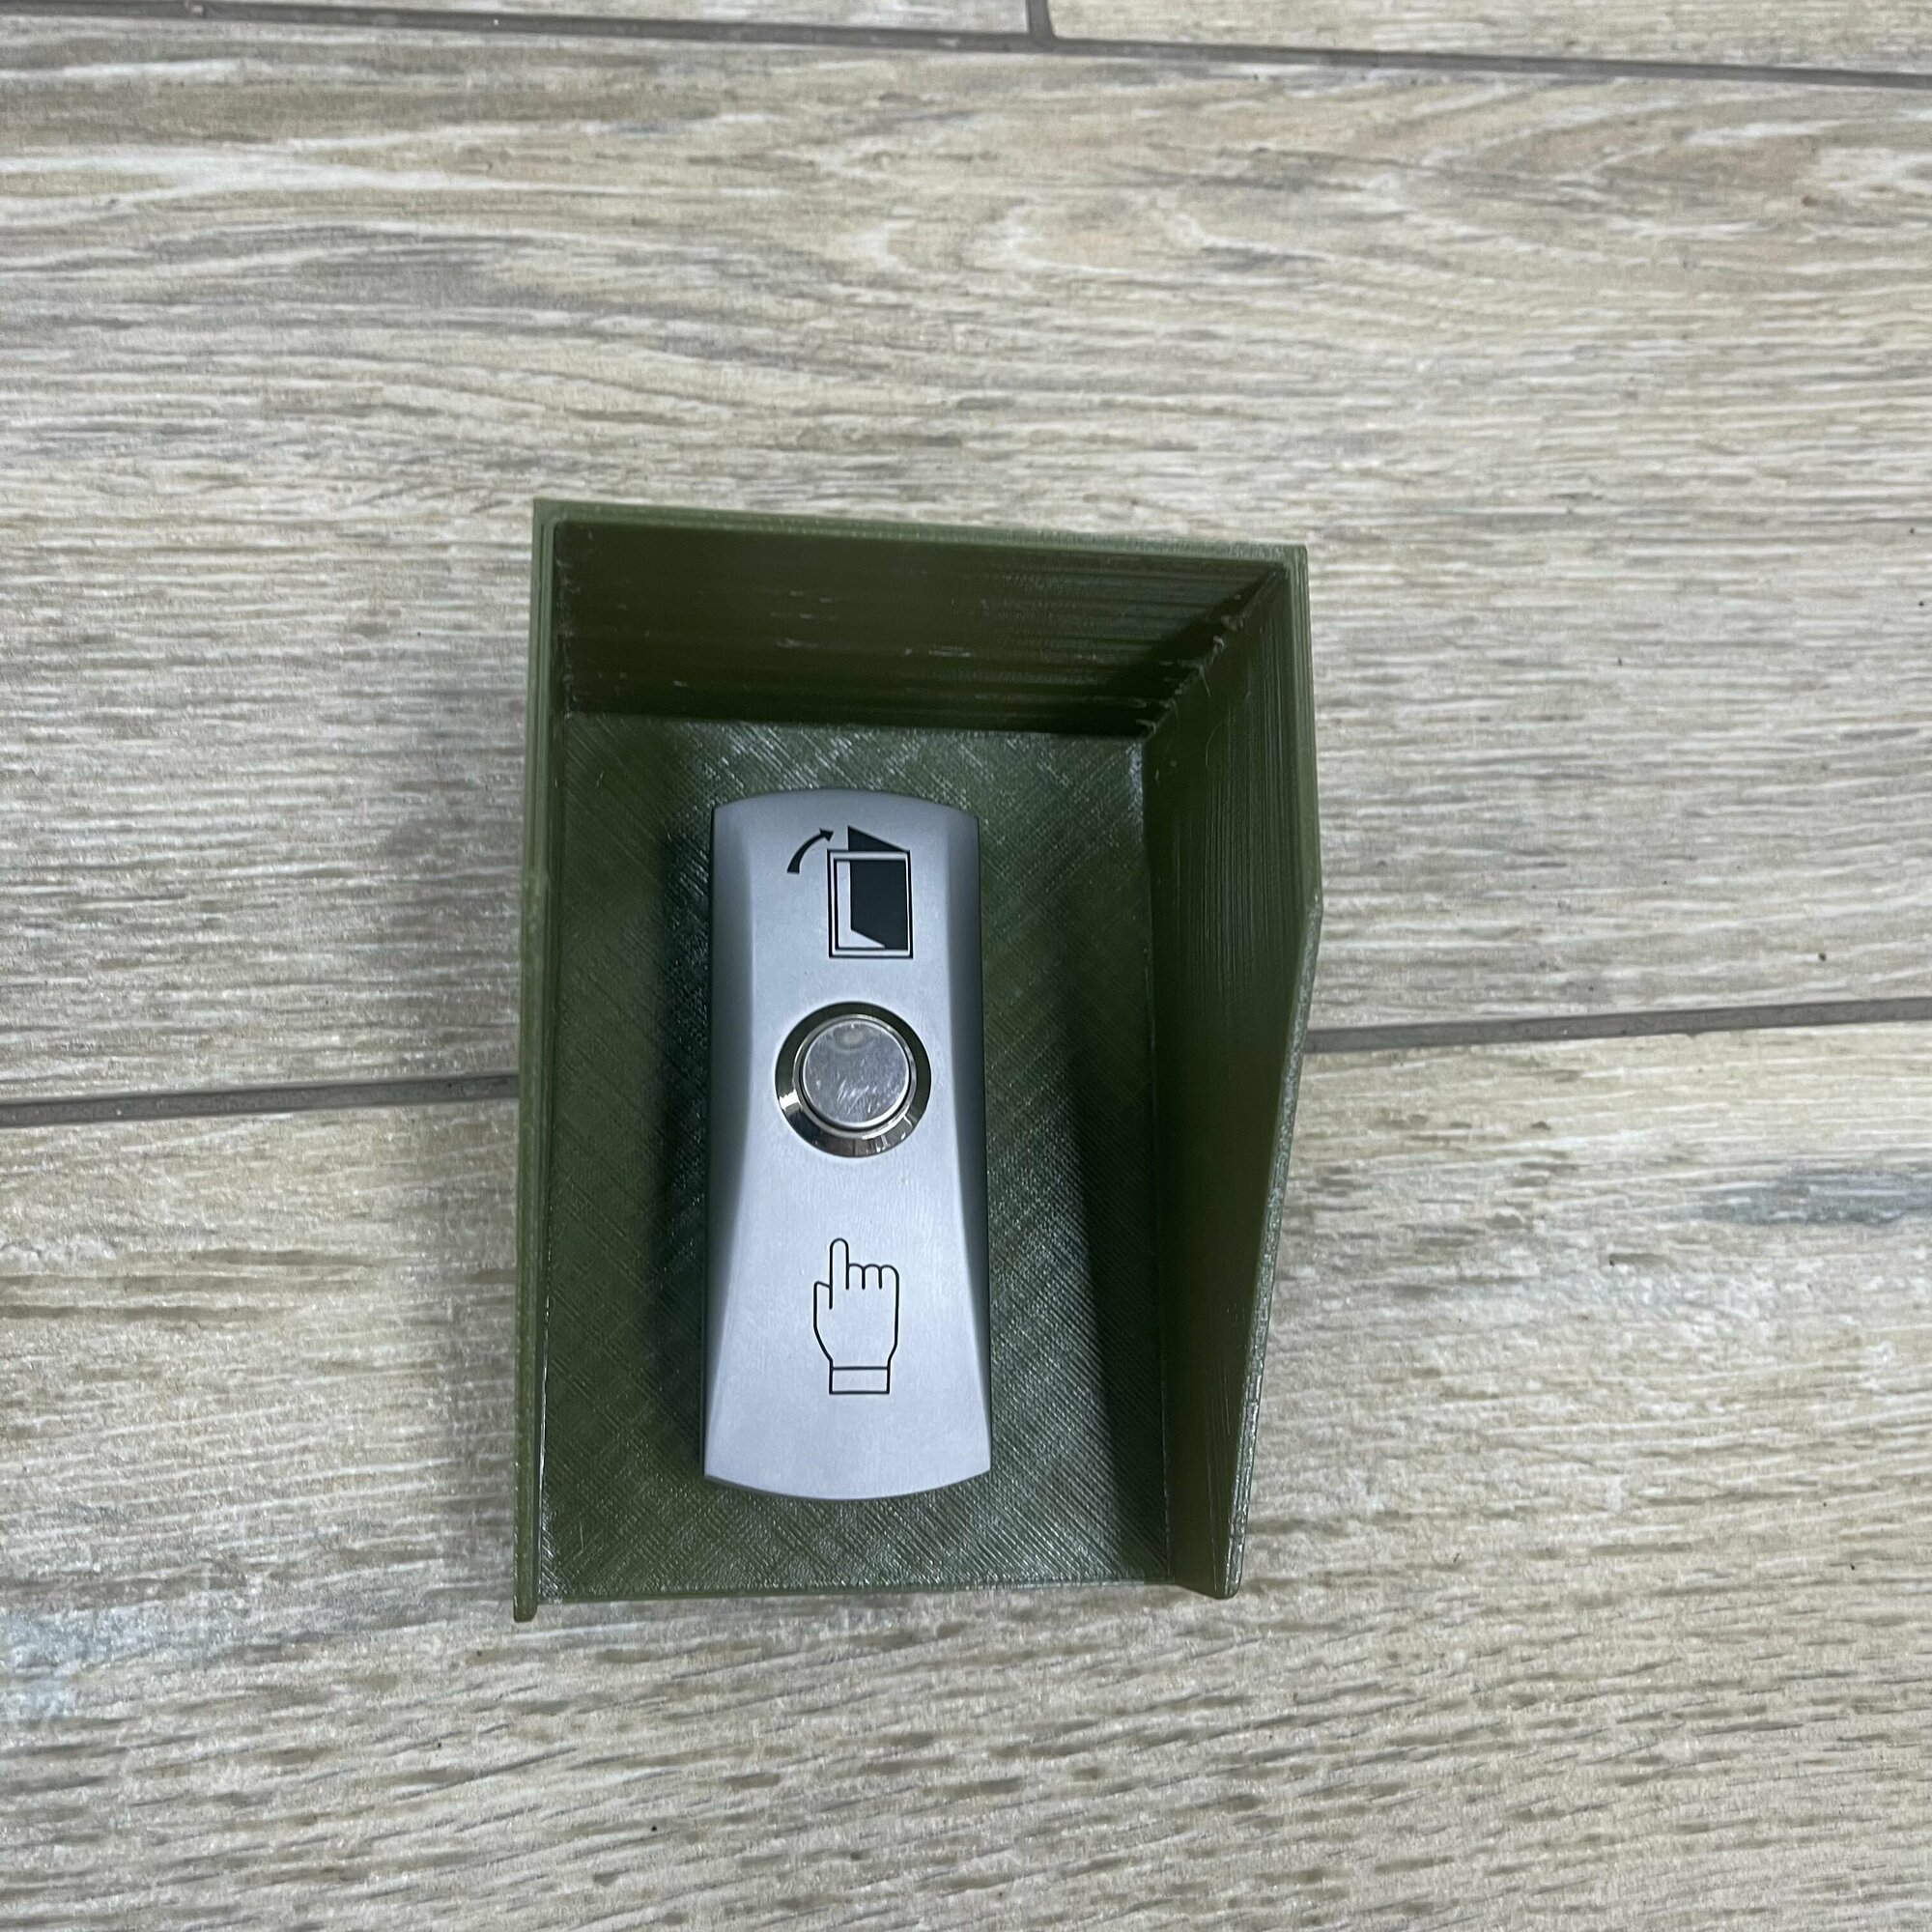 Универсальный защитный козырек для кнопки выхода, считывателя на шлагбаум, звонка. 3D-печать пластик - 2 мм. Размер 110x80x60мм. (Зеленый хаки)